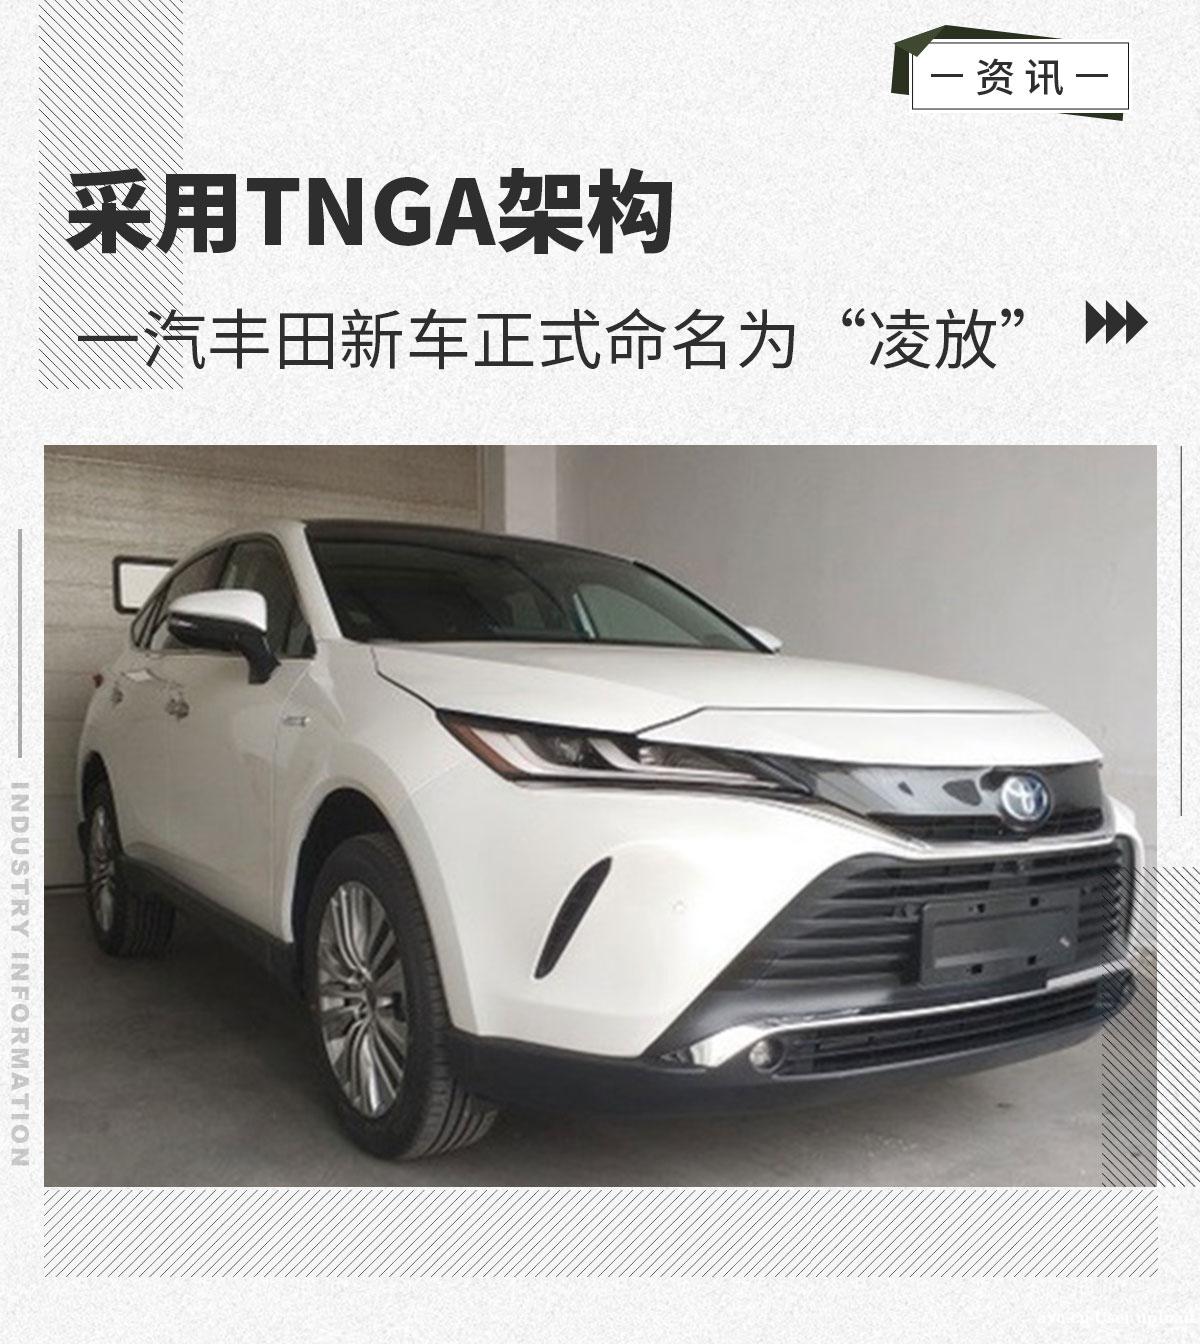 中文名为“凌放”一汽丰田全新SUV广州车展亮相